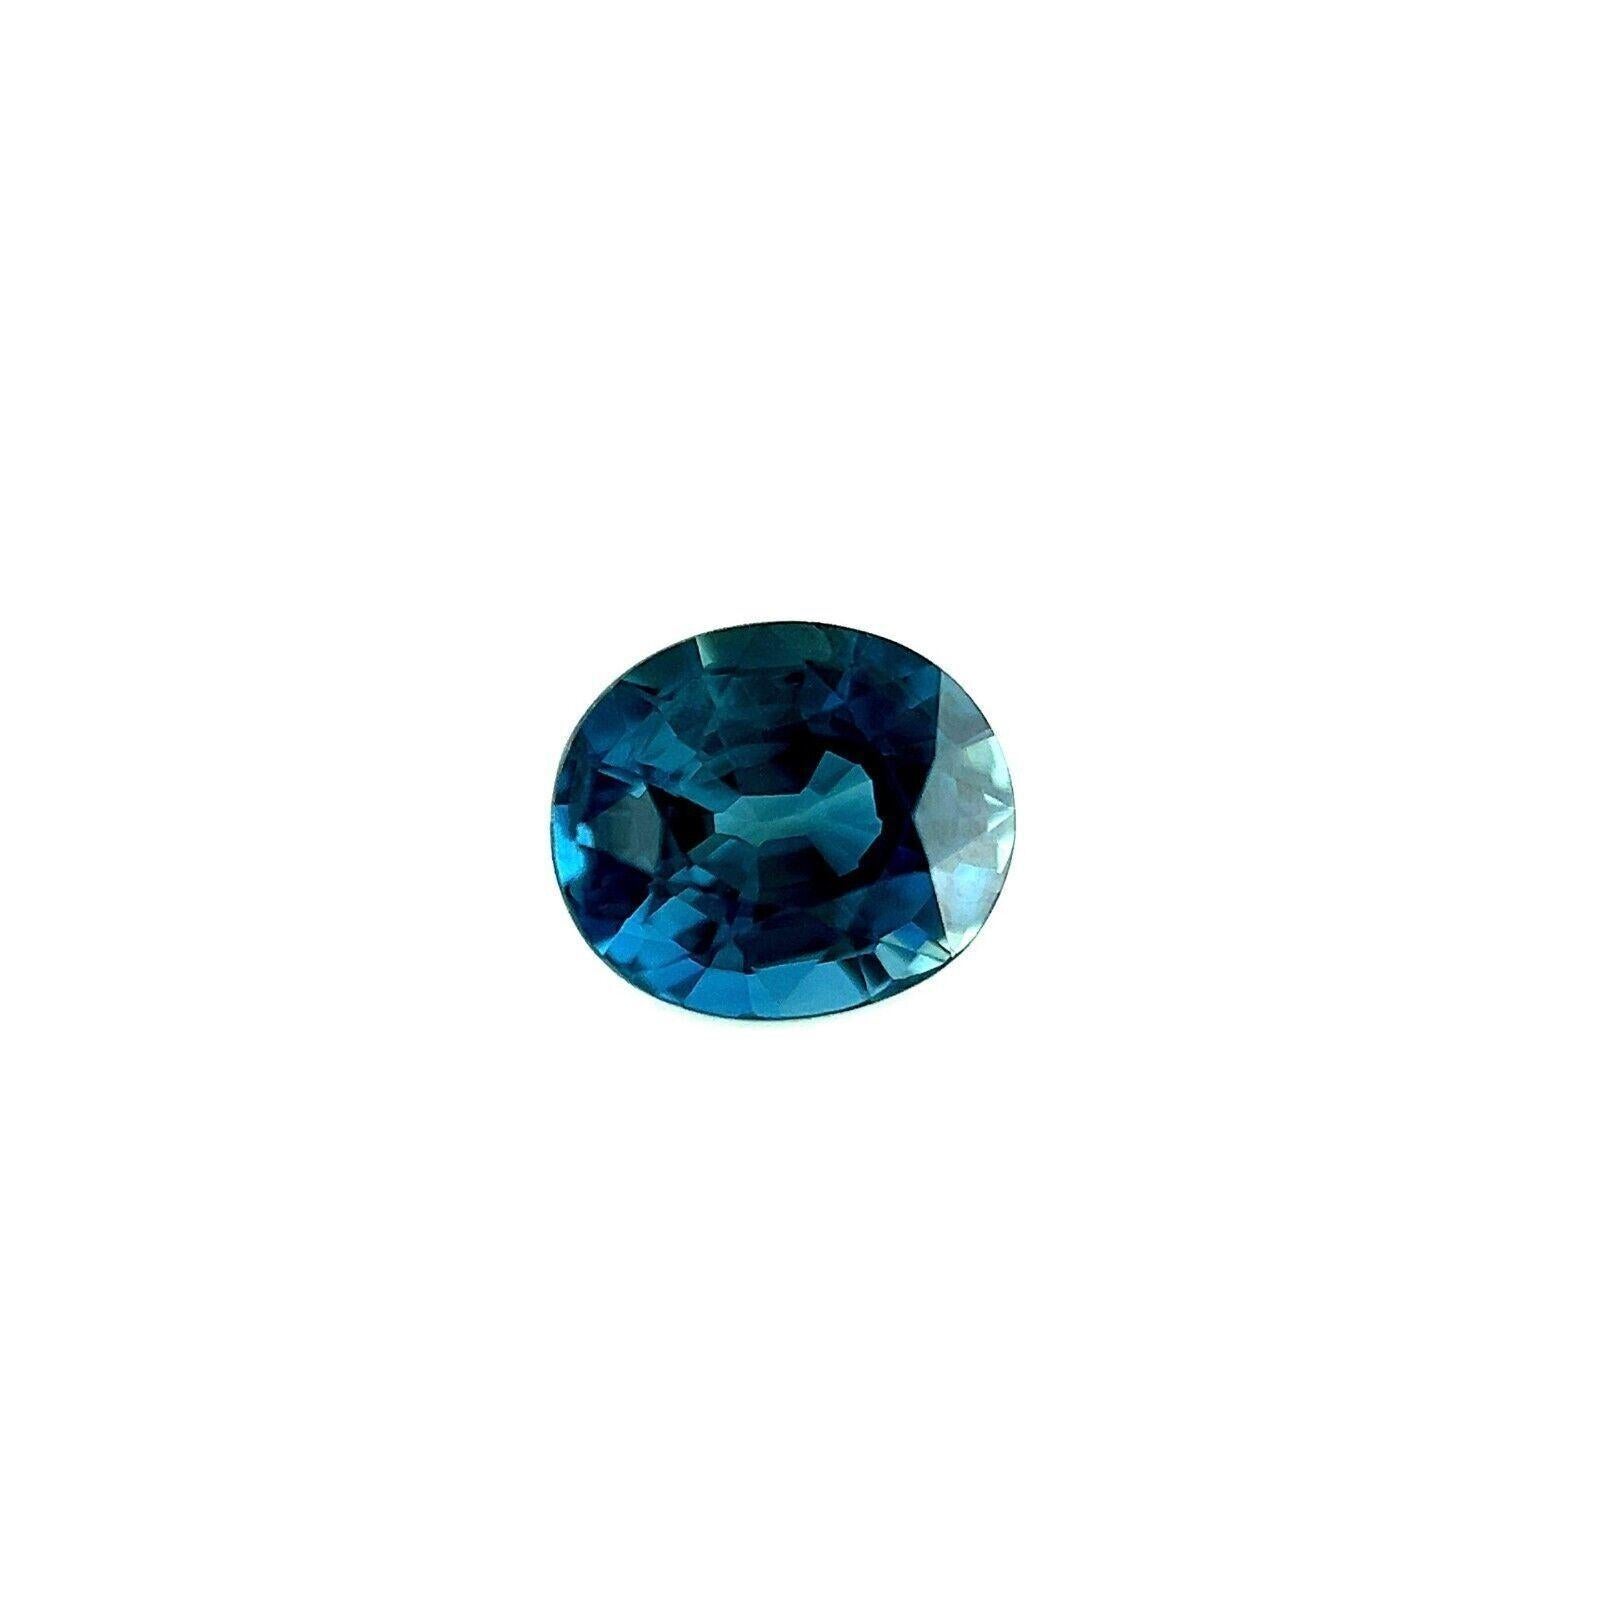 Top Grade 0.71ct Natürlicher Blauer Australischer Saphir Oval Seltener Edelstein 5.5x4.8mm VVS

Top Grade Natural Australian Blue Sapphire Edelstein.
0,71 Karat mit einer schönen feinblauen Farbe und ausgezeichneter Reinheit, ein sehr sauberer